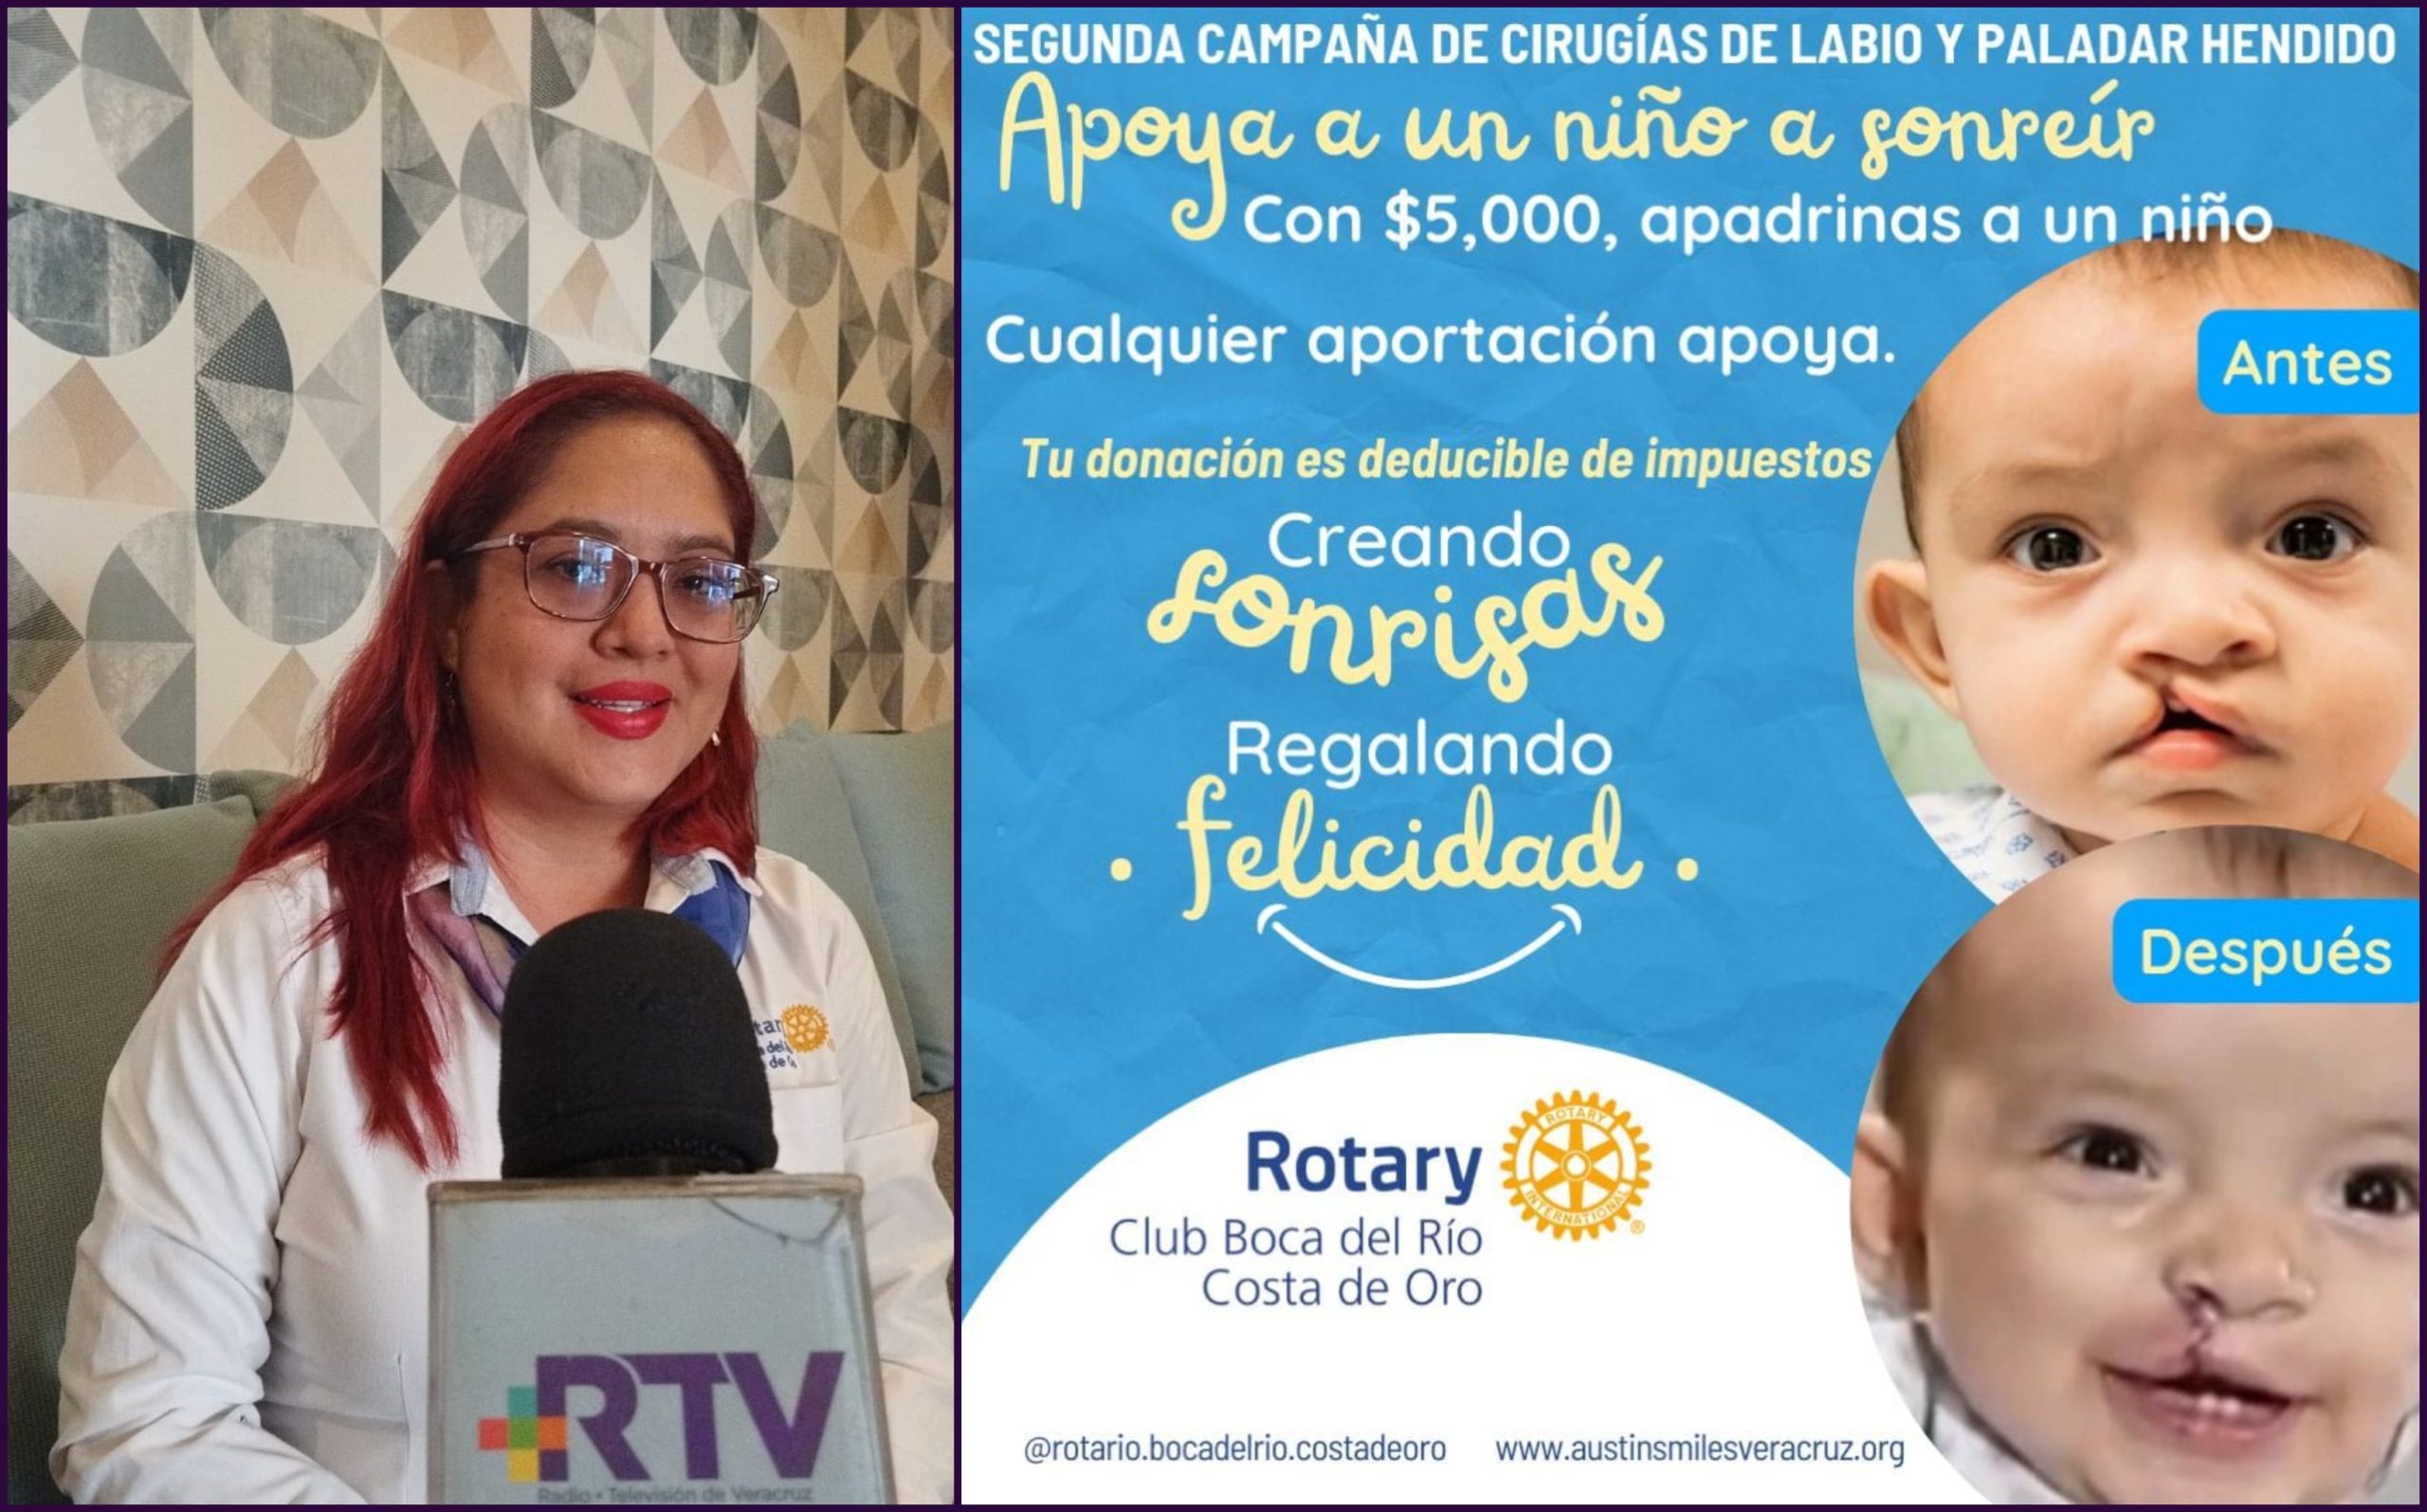 Club Rotario convoca a segunda campaña de cirugías de labio y paladar hendido